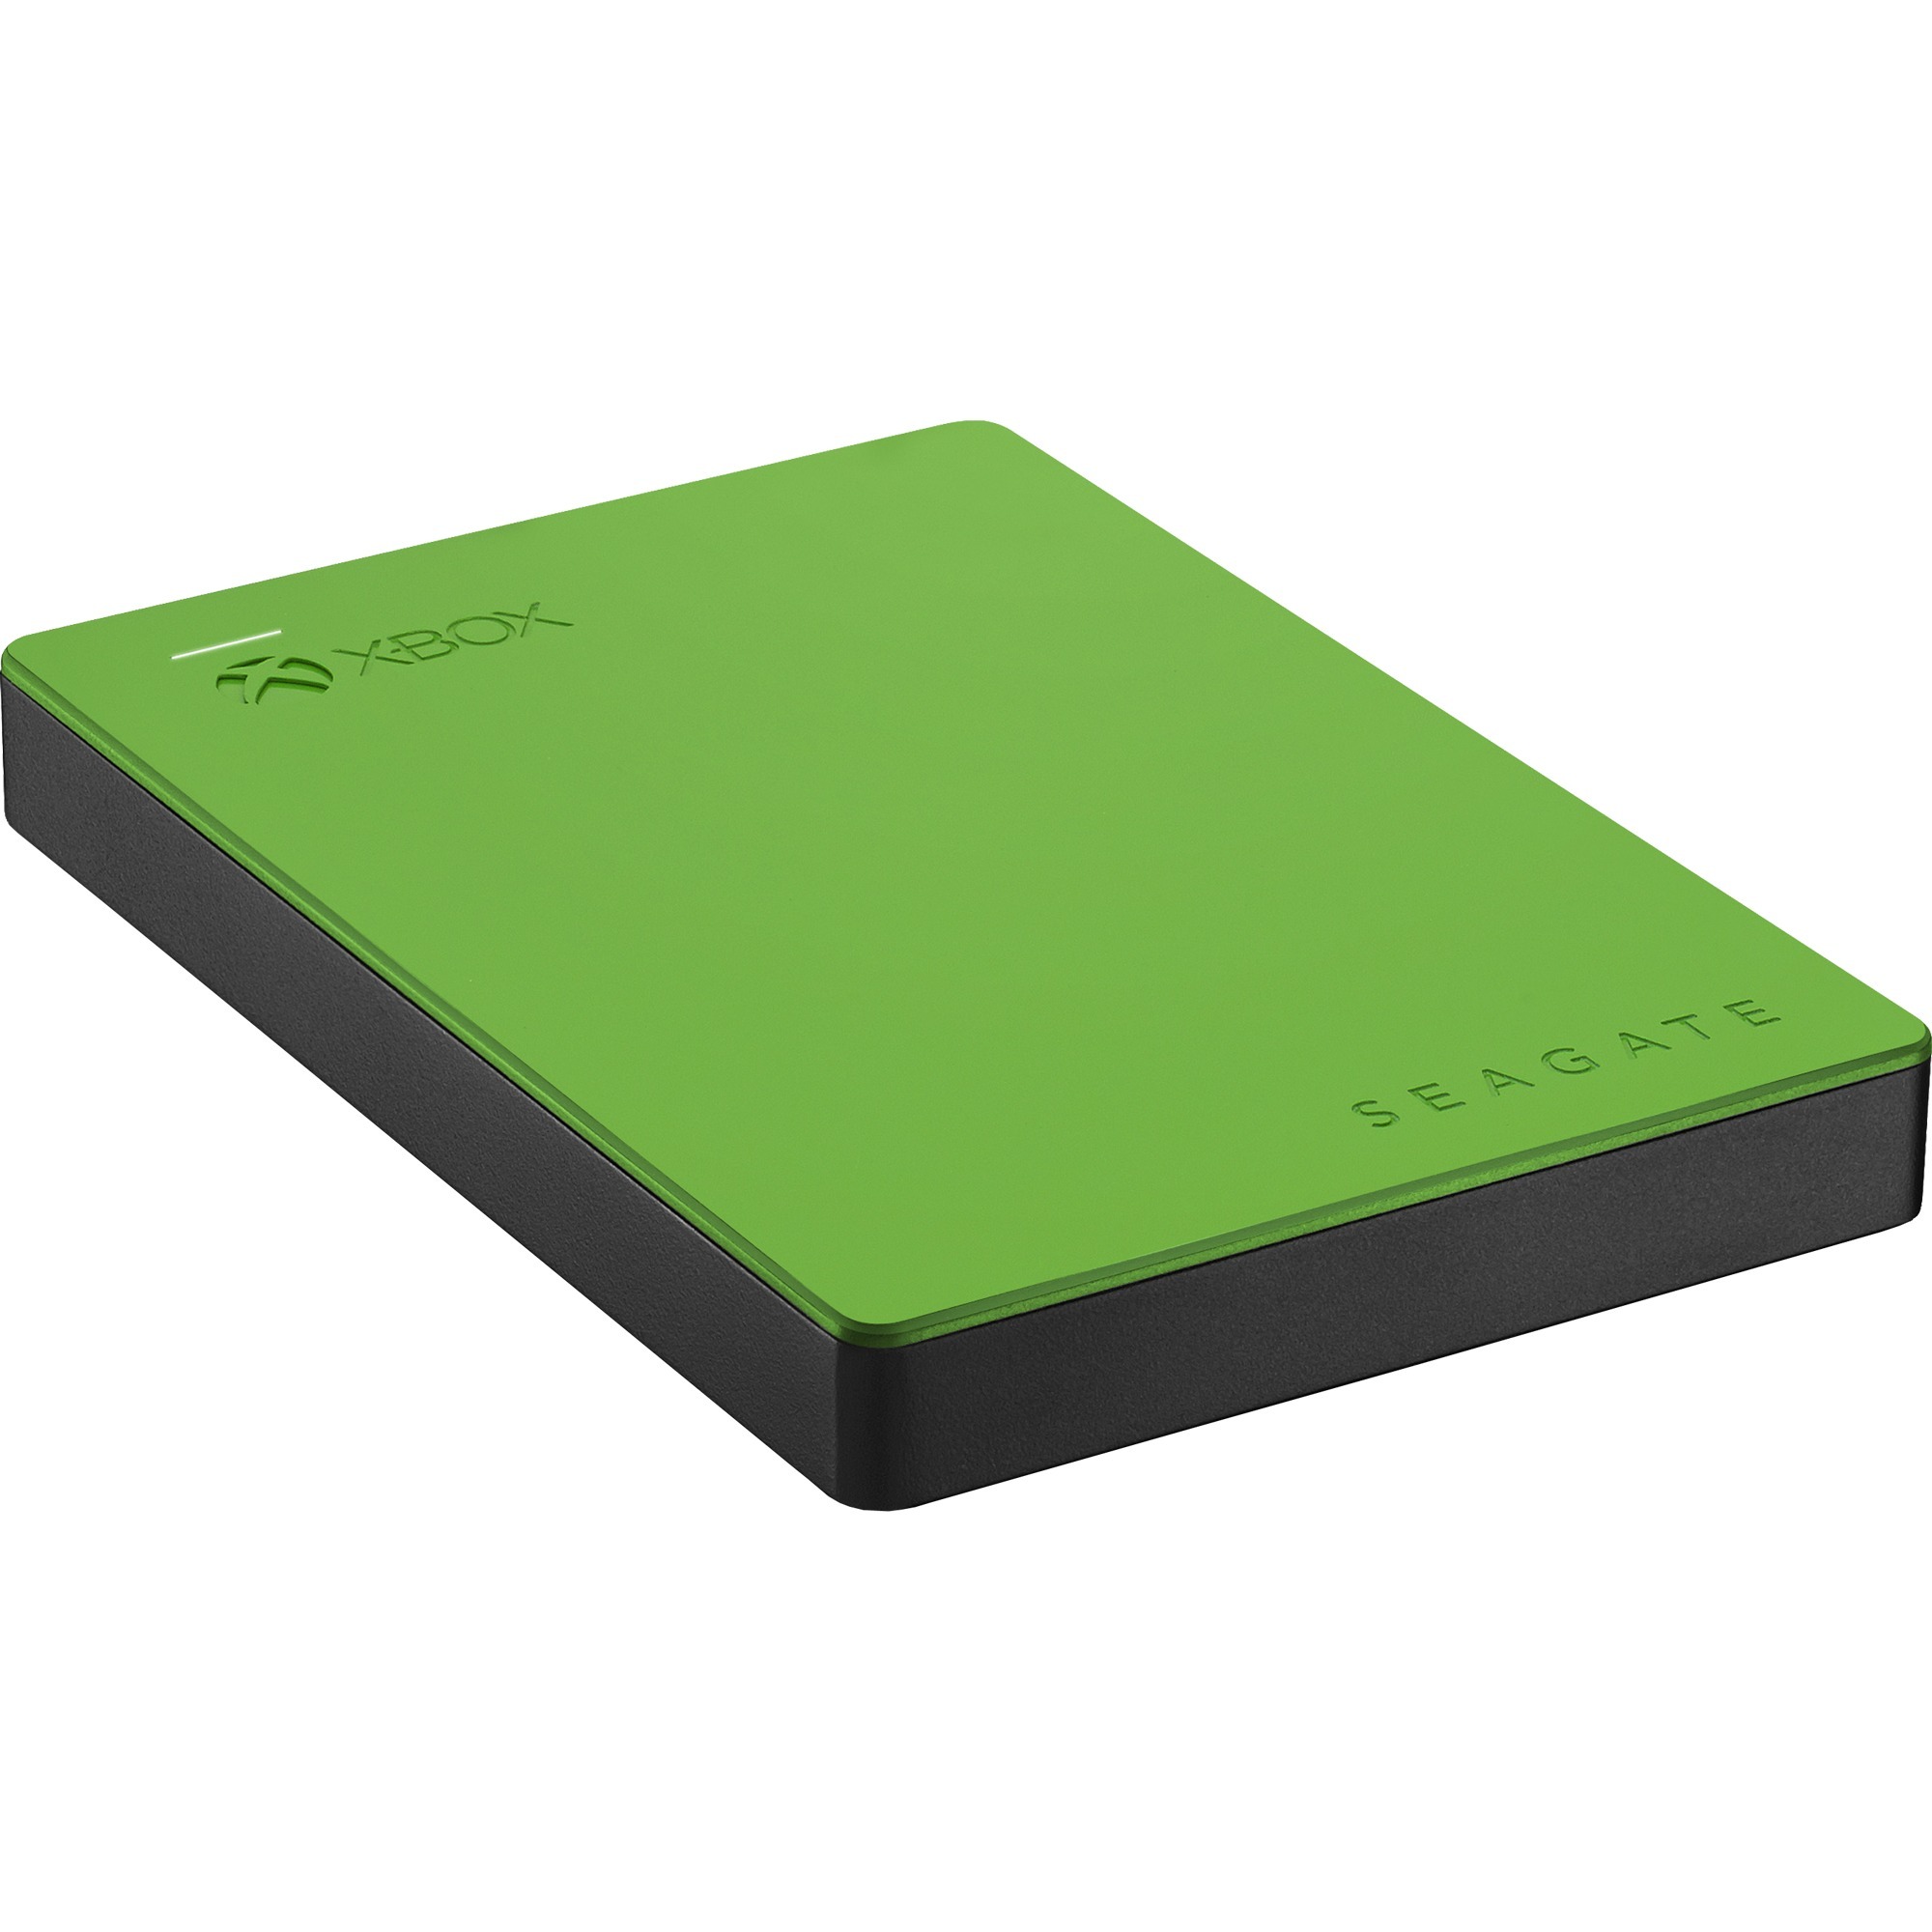 Game Drive For Xbox Portable 4TB zewn?trzny dysk twarde 4000 GB Czarny, Zielony, Dysk twardy